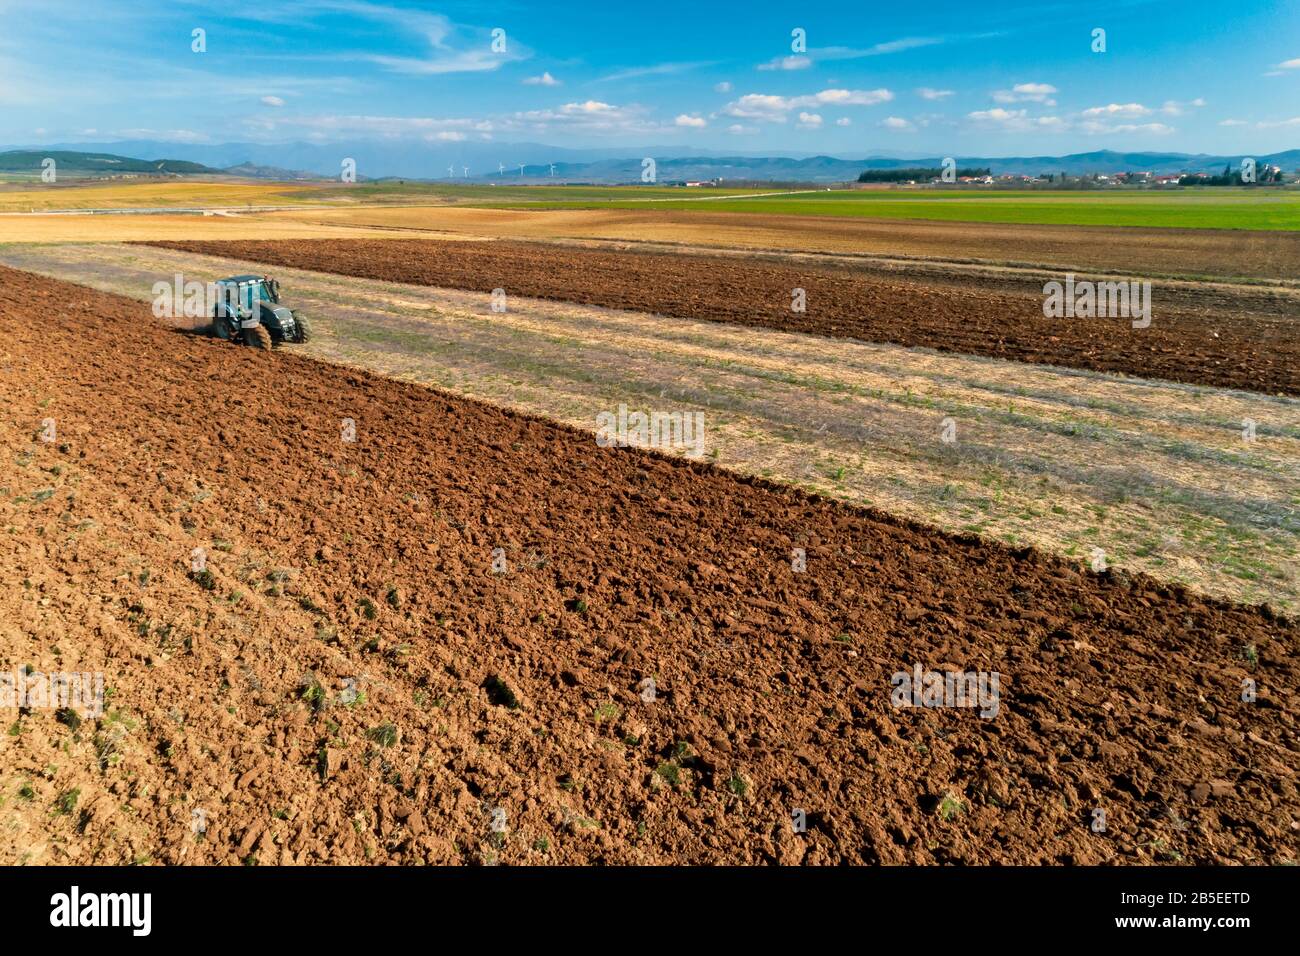 Fuco aereo sparato da un agricoltore nella semina di trattori, semina colture agricole sul campo nei fertili campi agricoli di Kilkis nella Grecia settentrionale Foto Stock